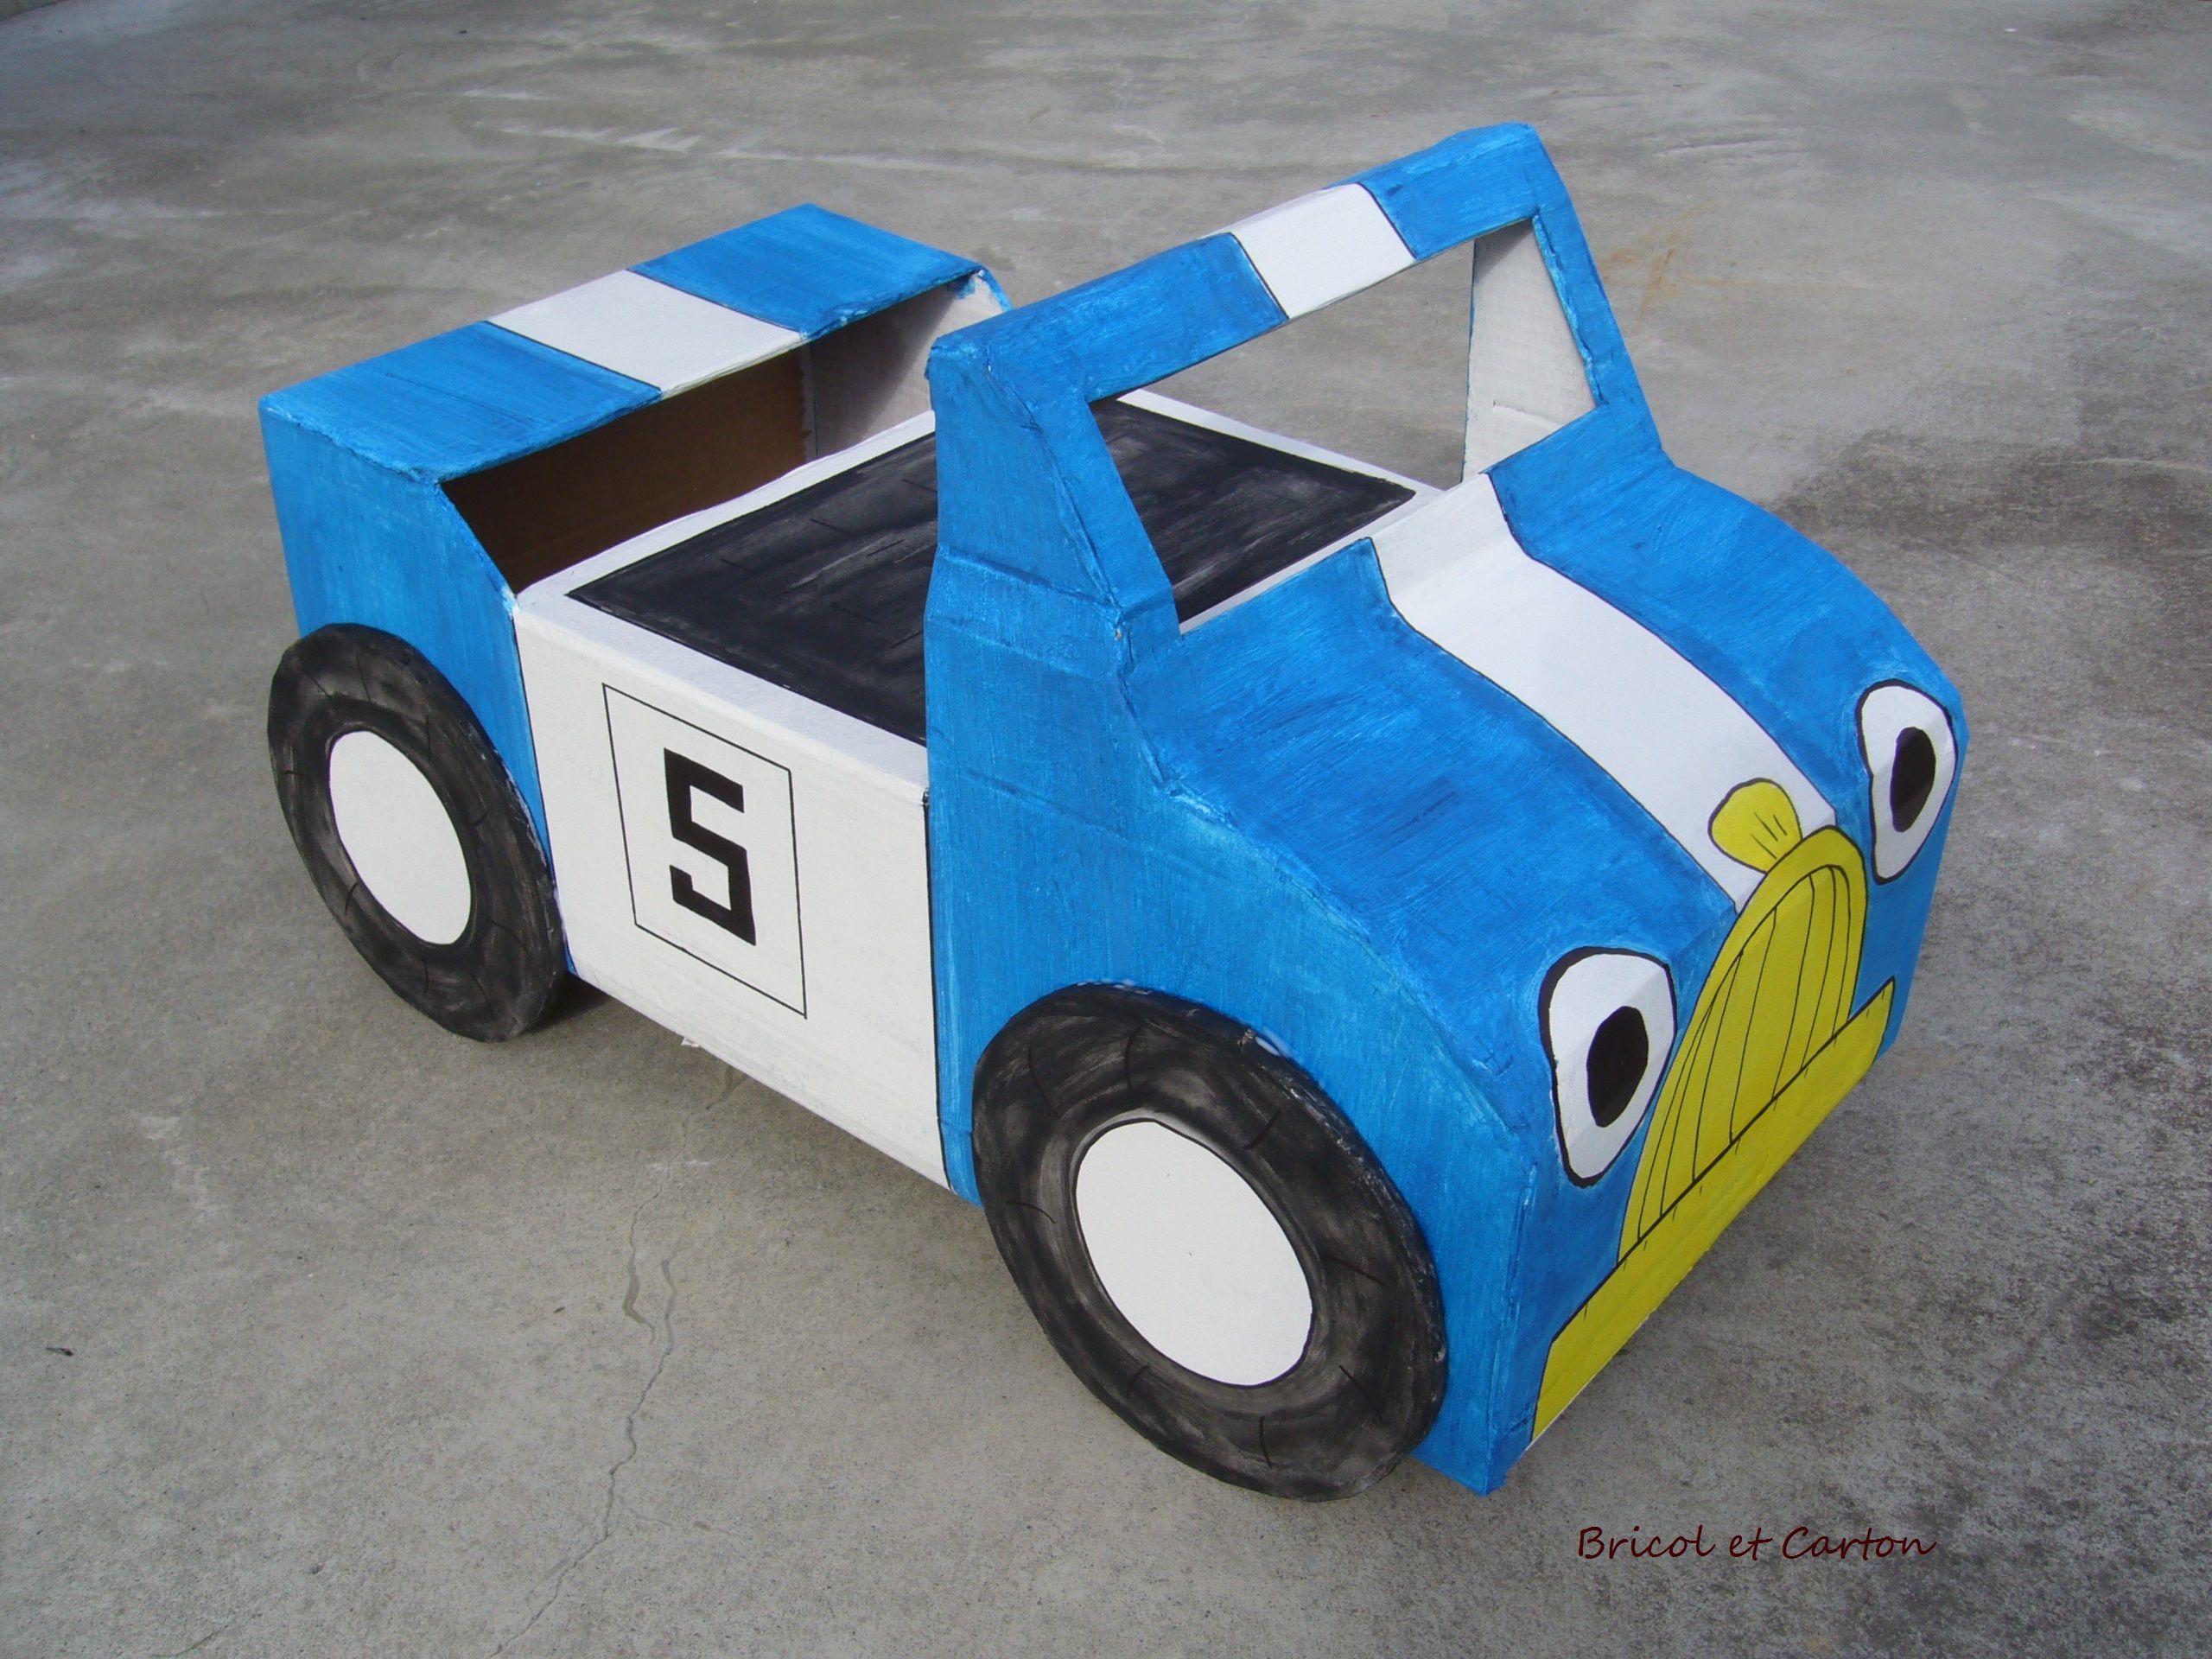 Машинка своими руками из картона для детей: Как сделать машинку из бумаги, из картона, своими руками, схемы, оригами, 3D-машинки.